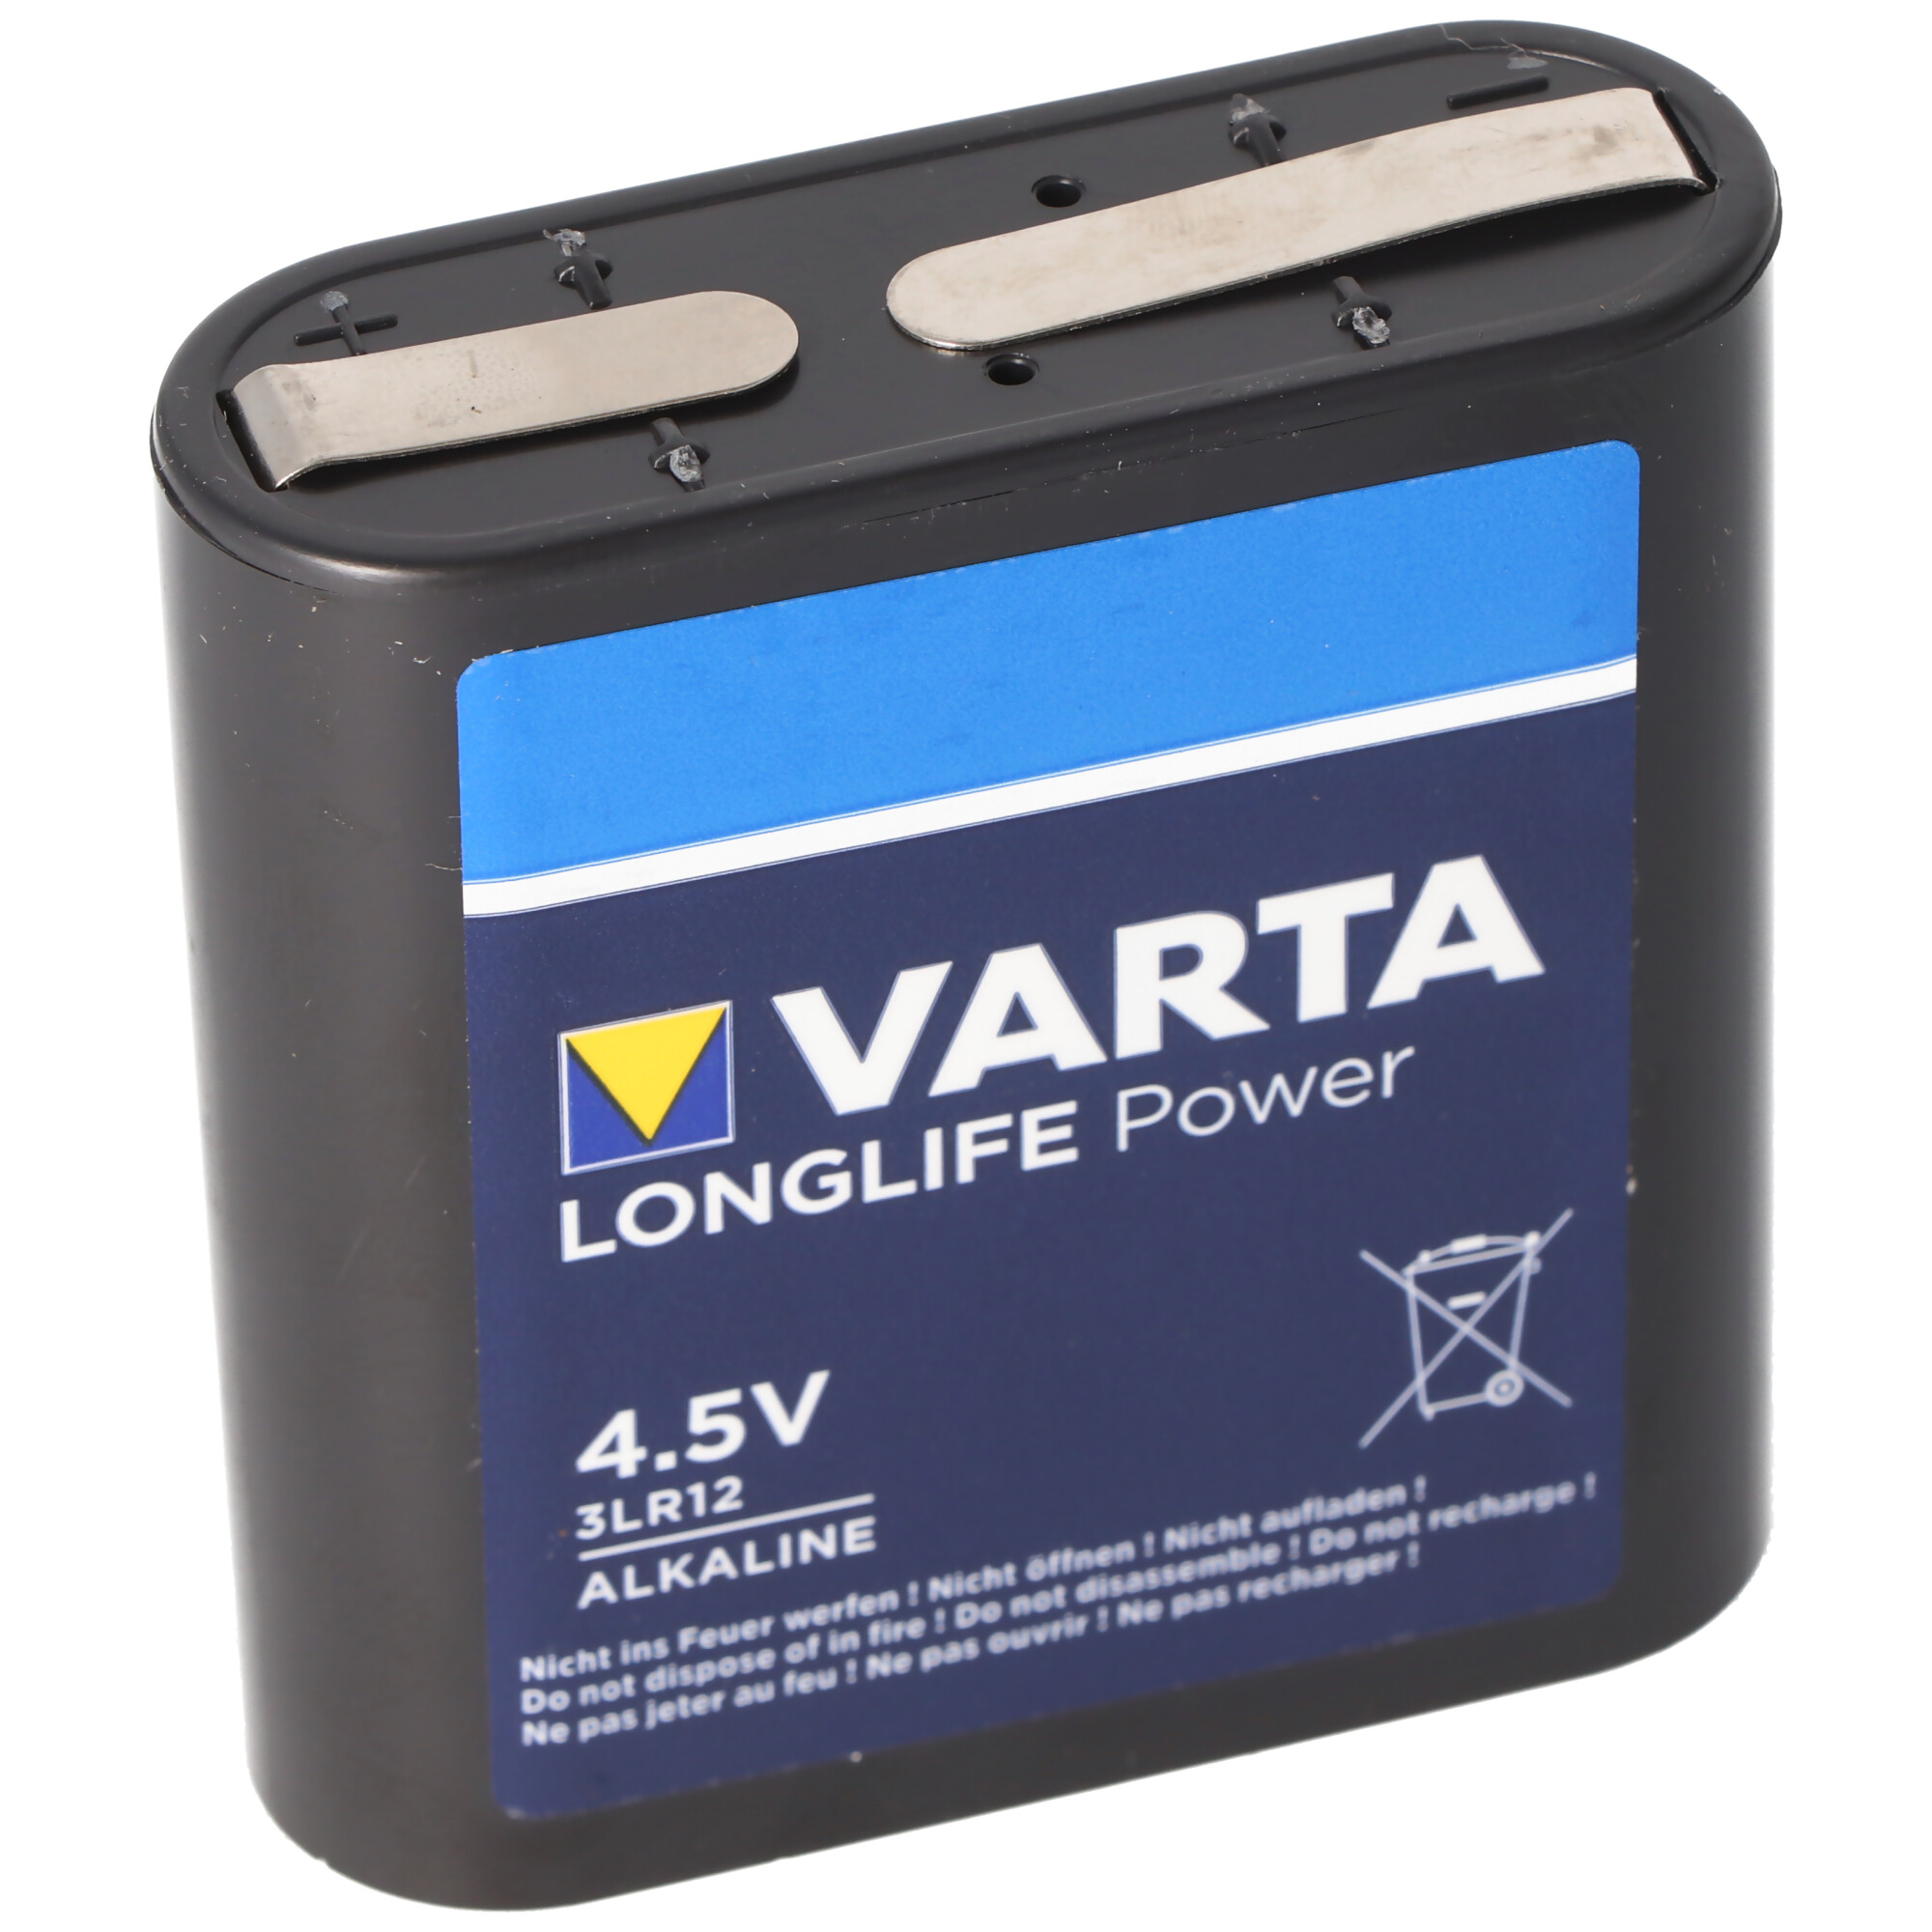 Varta Flachbatterie 4,5V - Brodbeck Leuchten